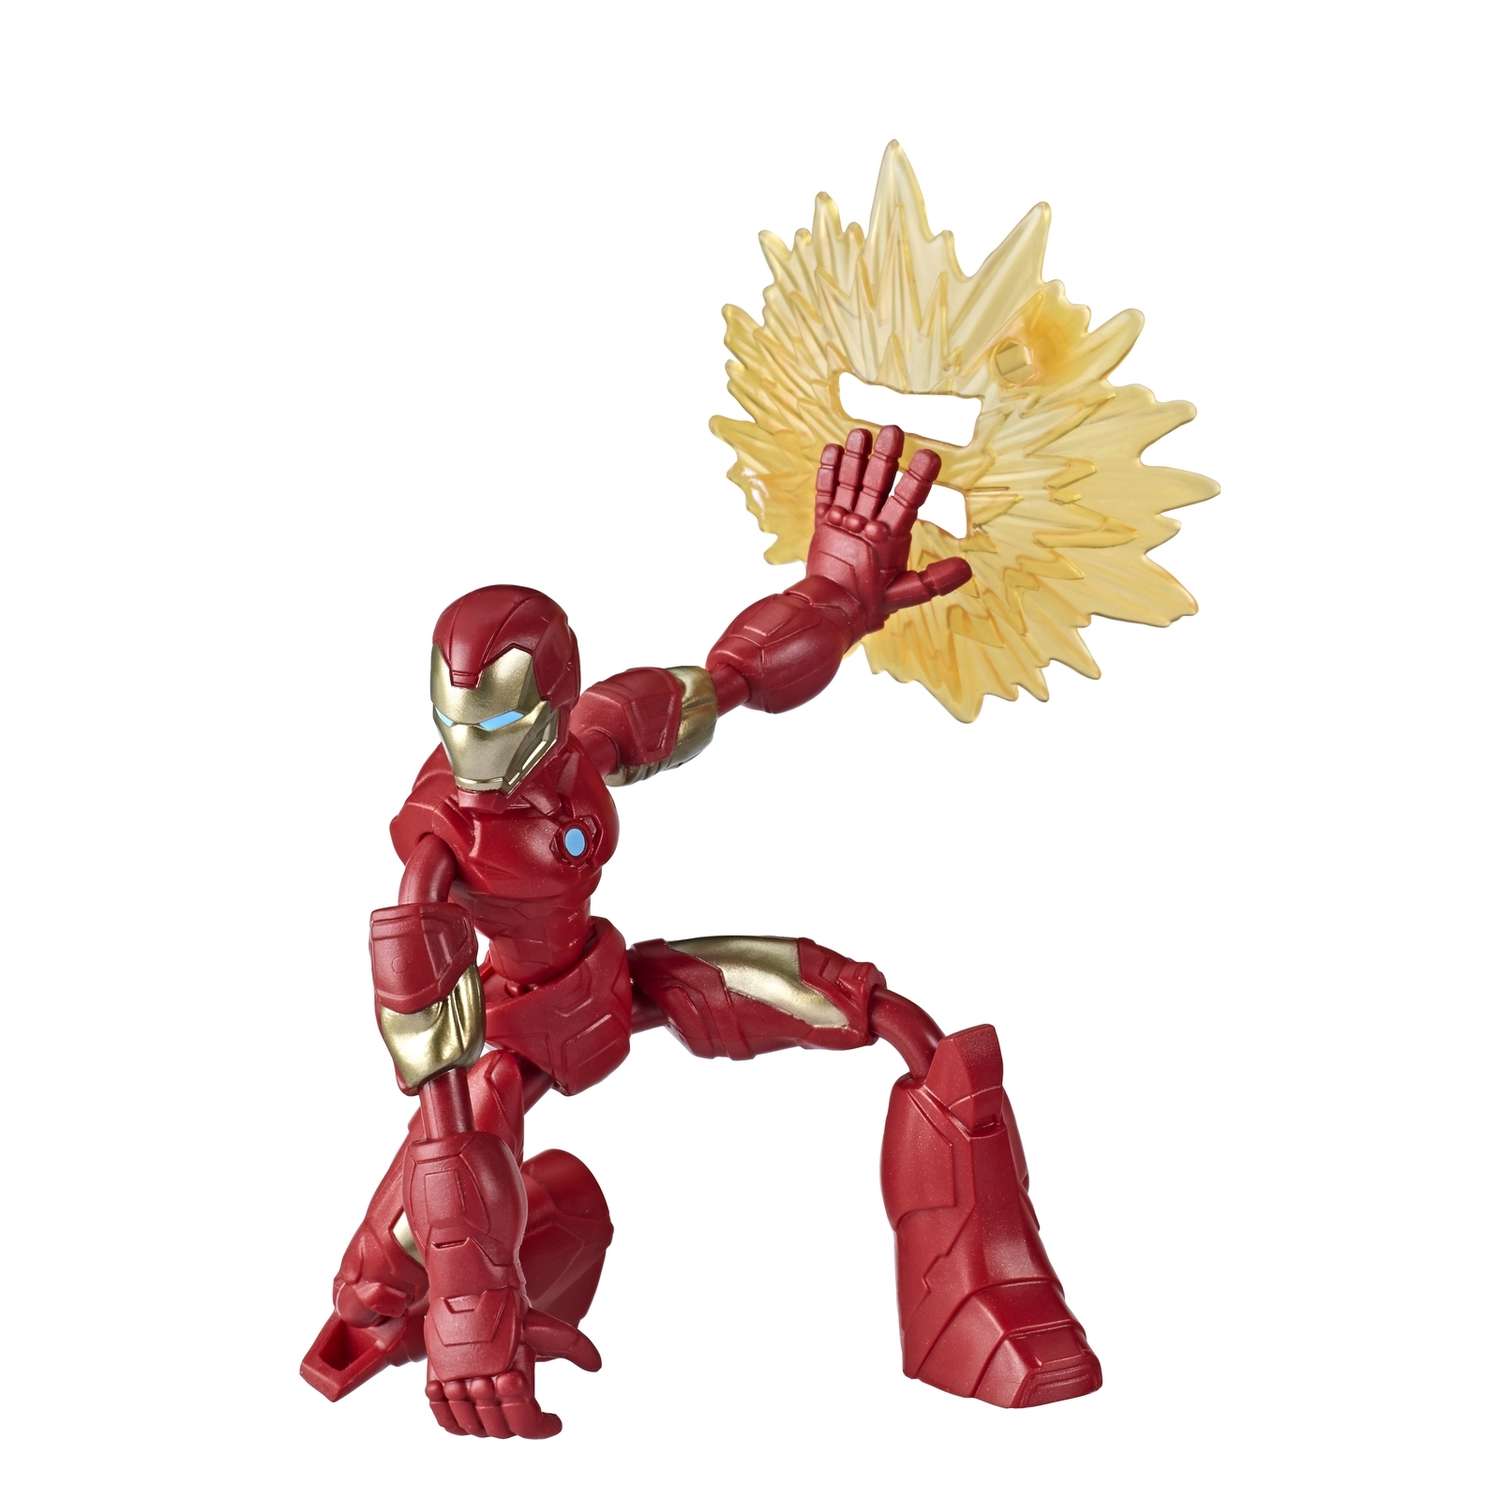 Игрушка Marvel Бенди Мстители Железный Человек E78705X0 - фото 1